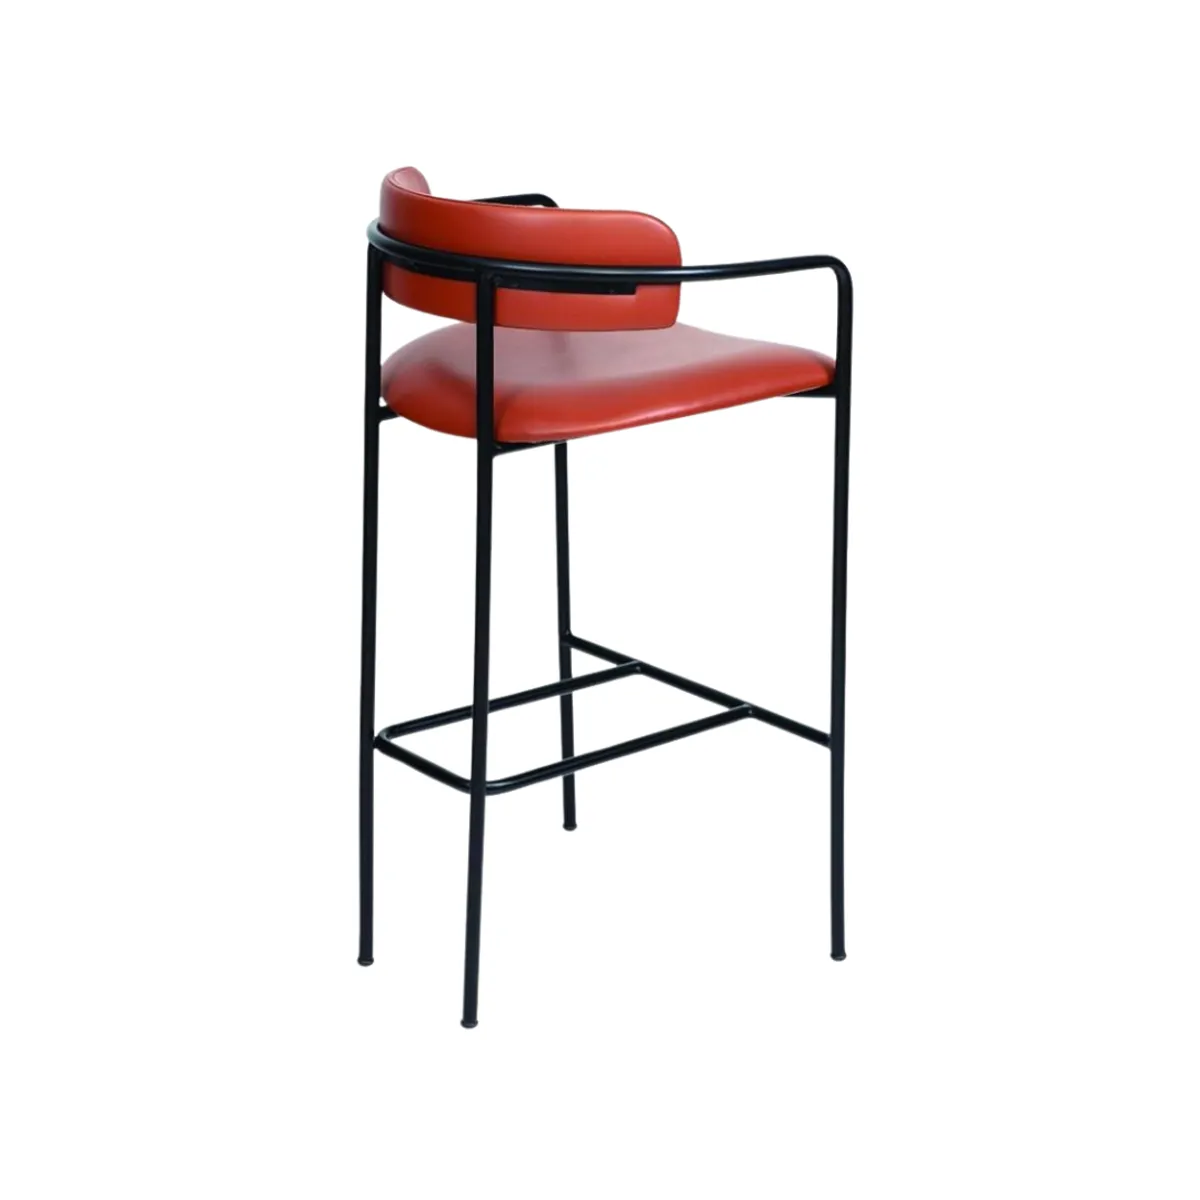 Claribel bar stool red